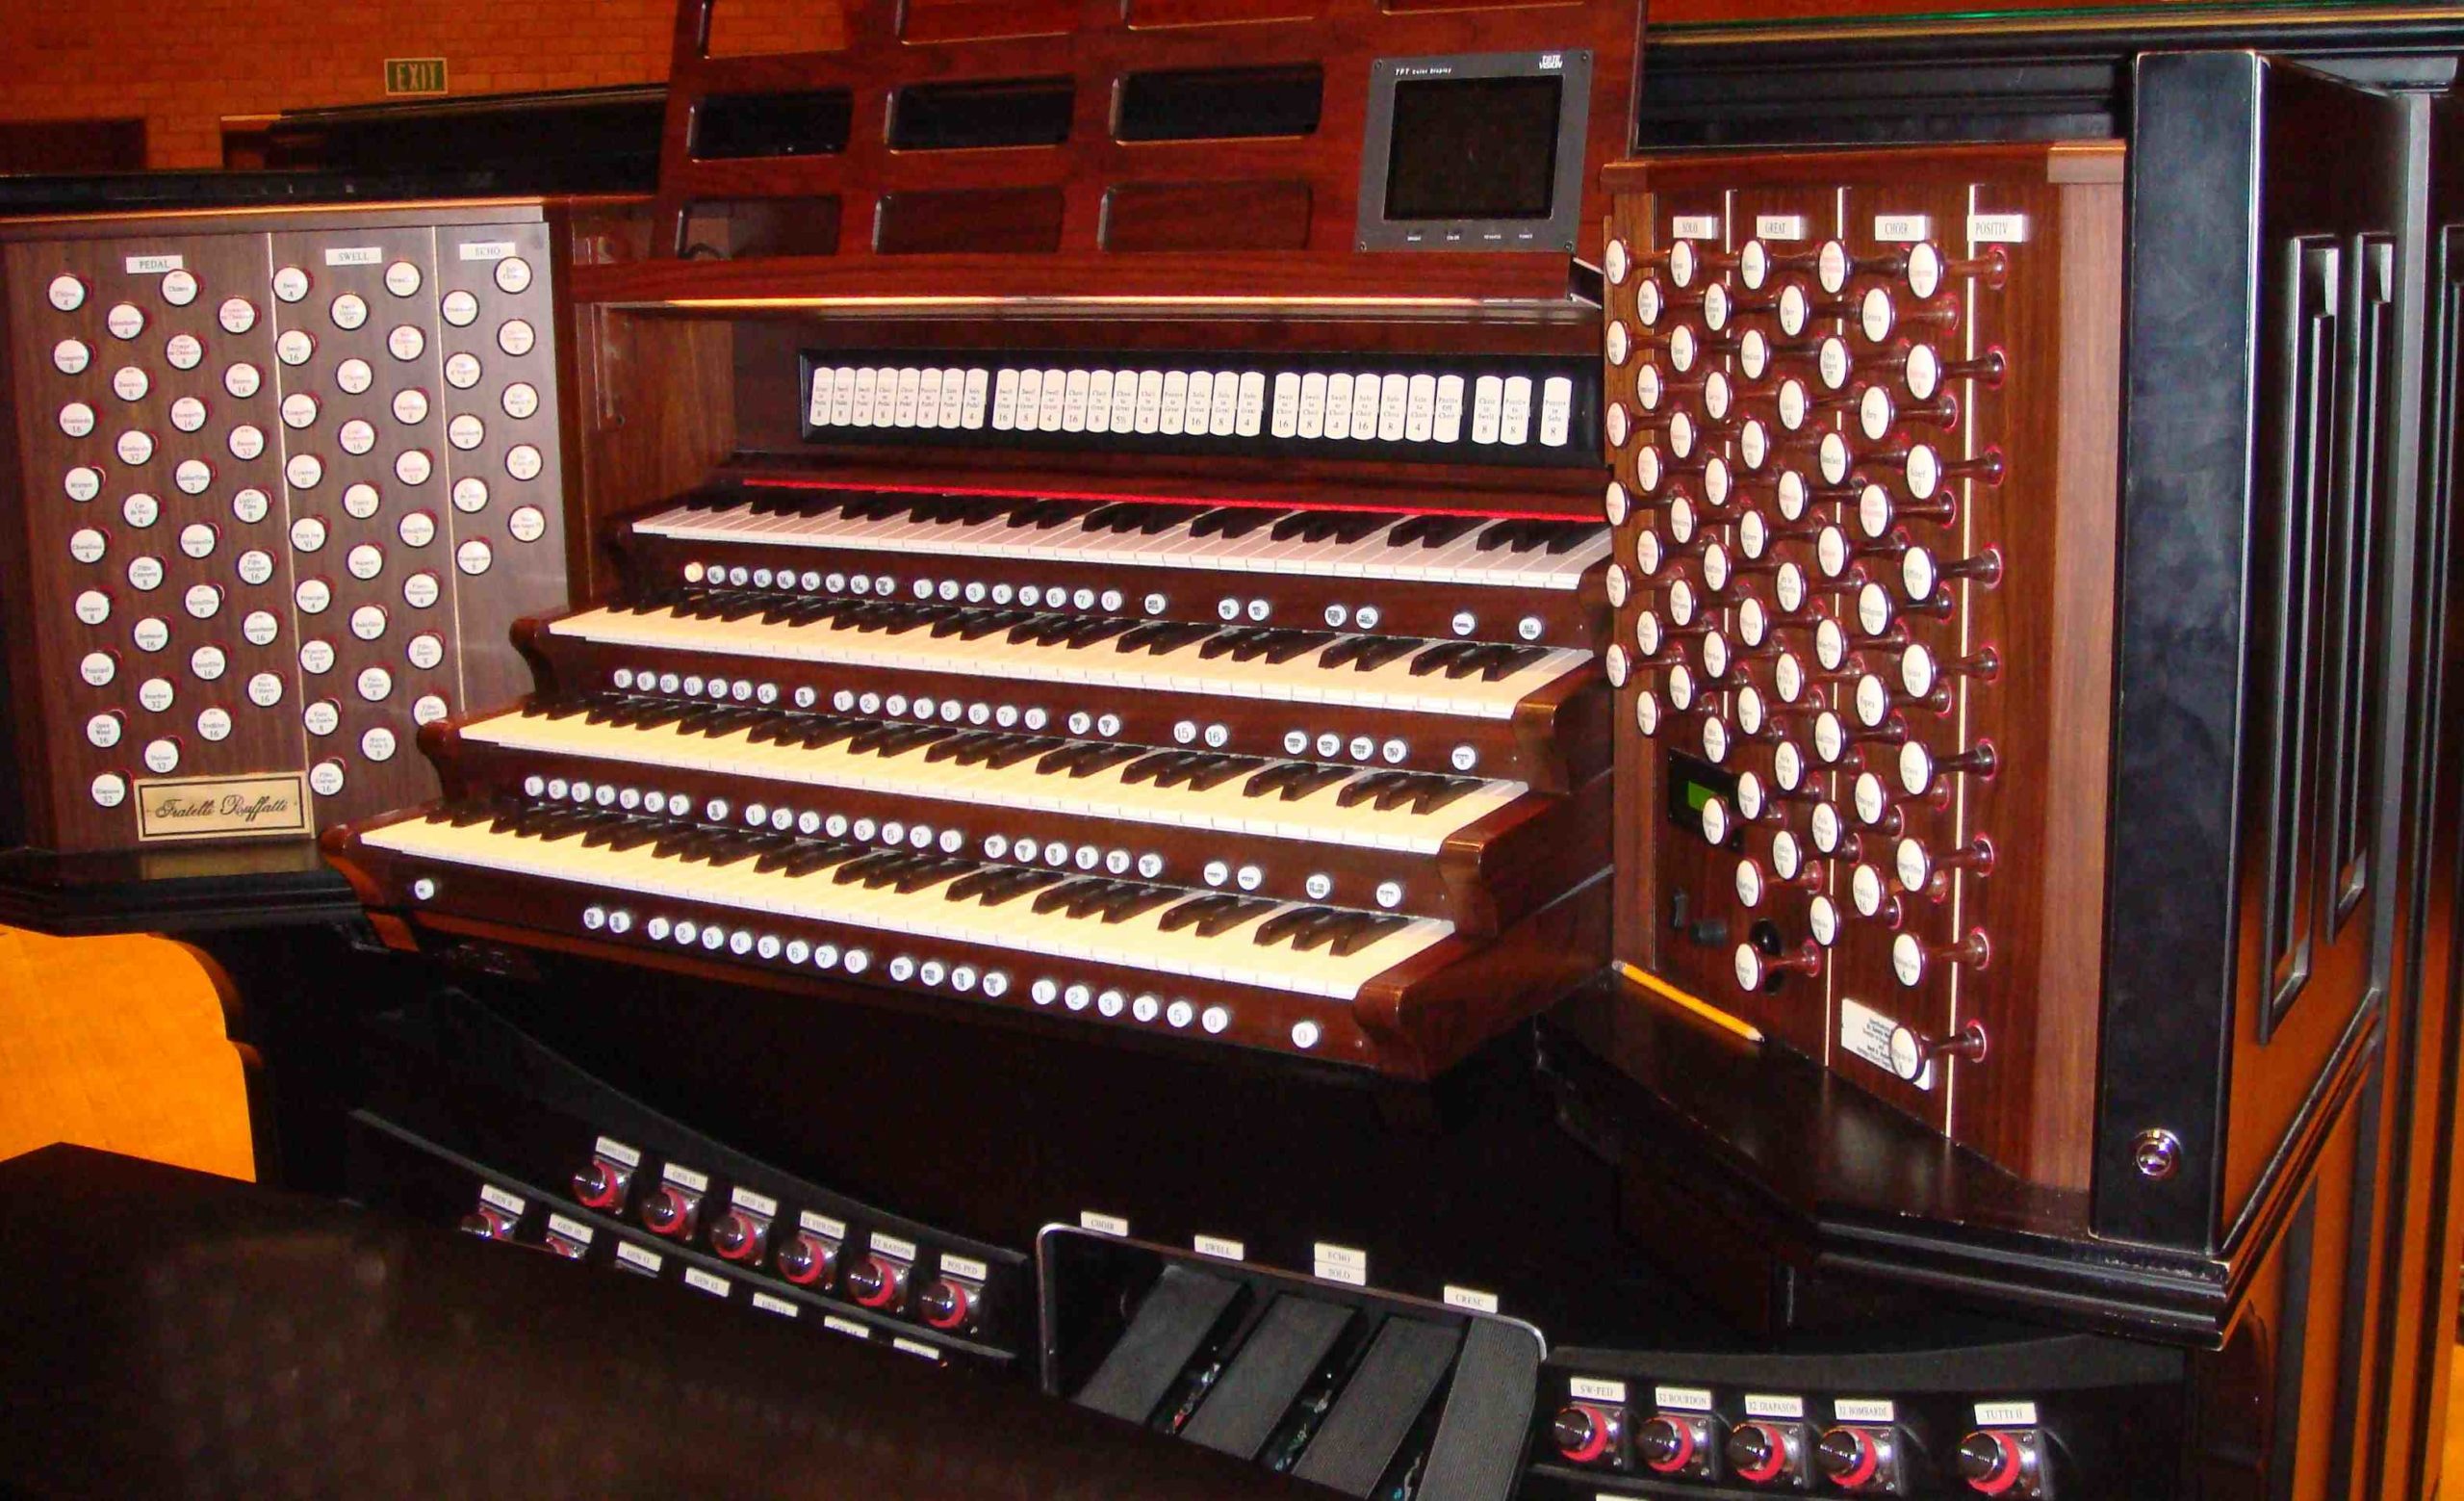 Comment Appelle-t-on les tuyaux de l'orgue ?